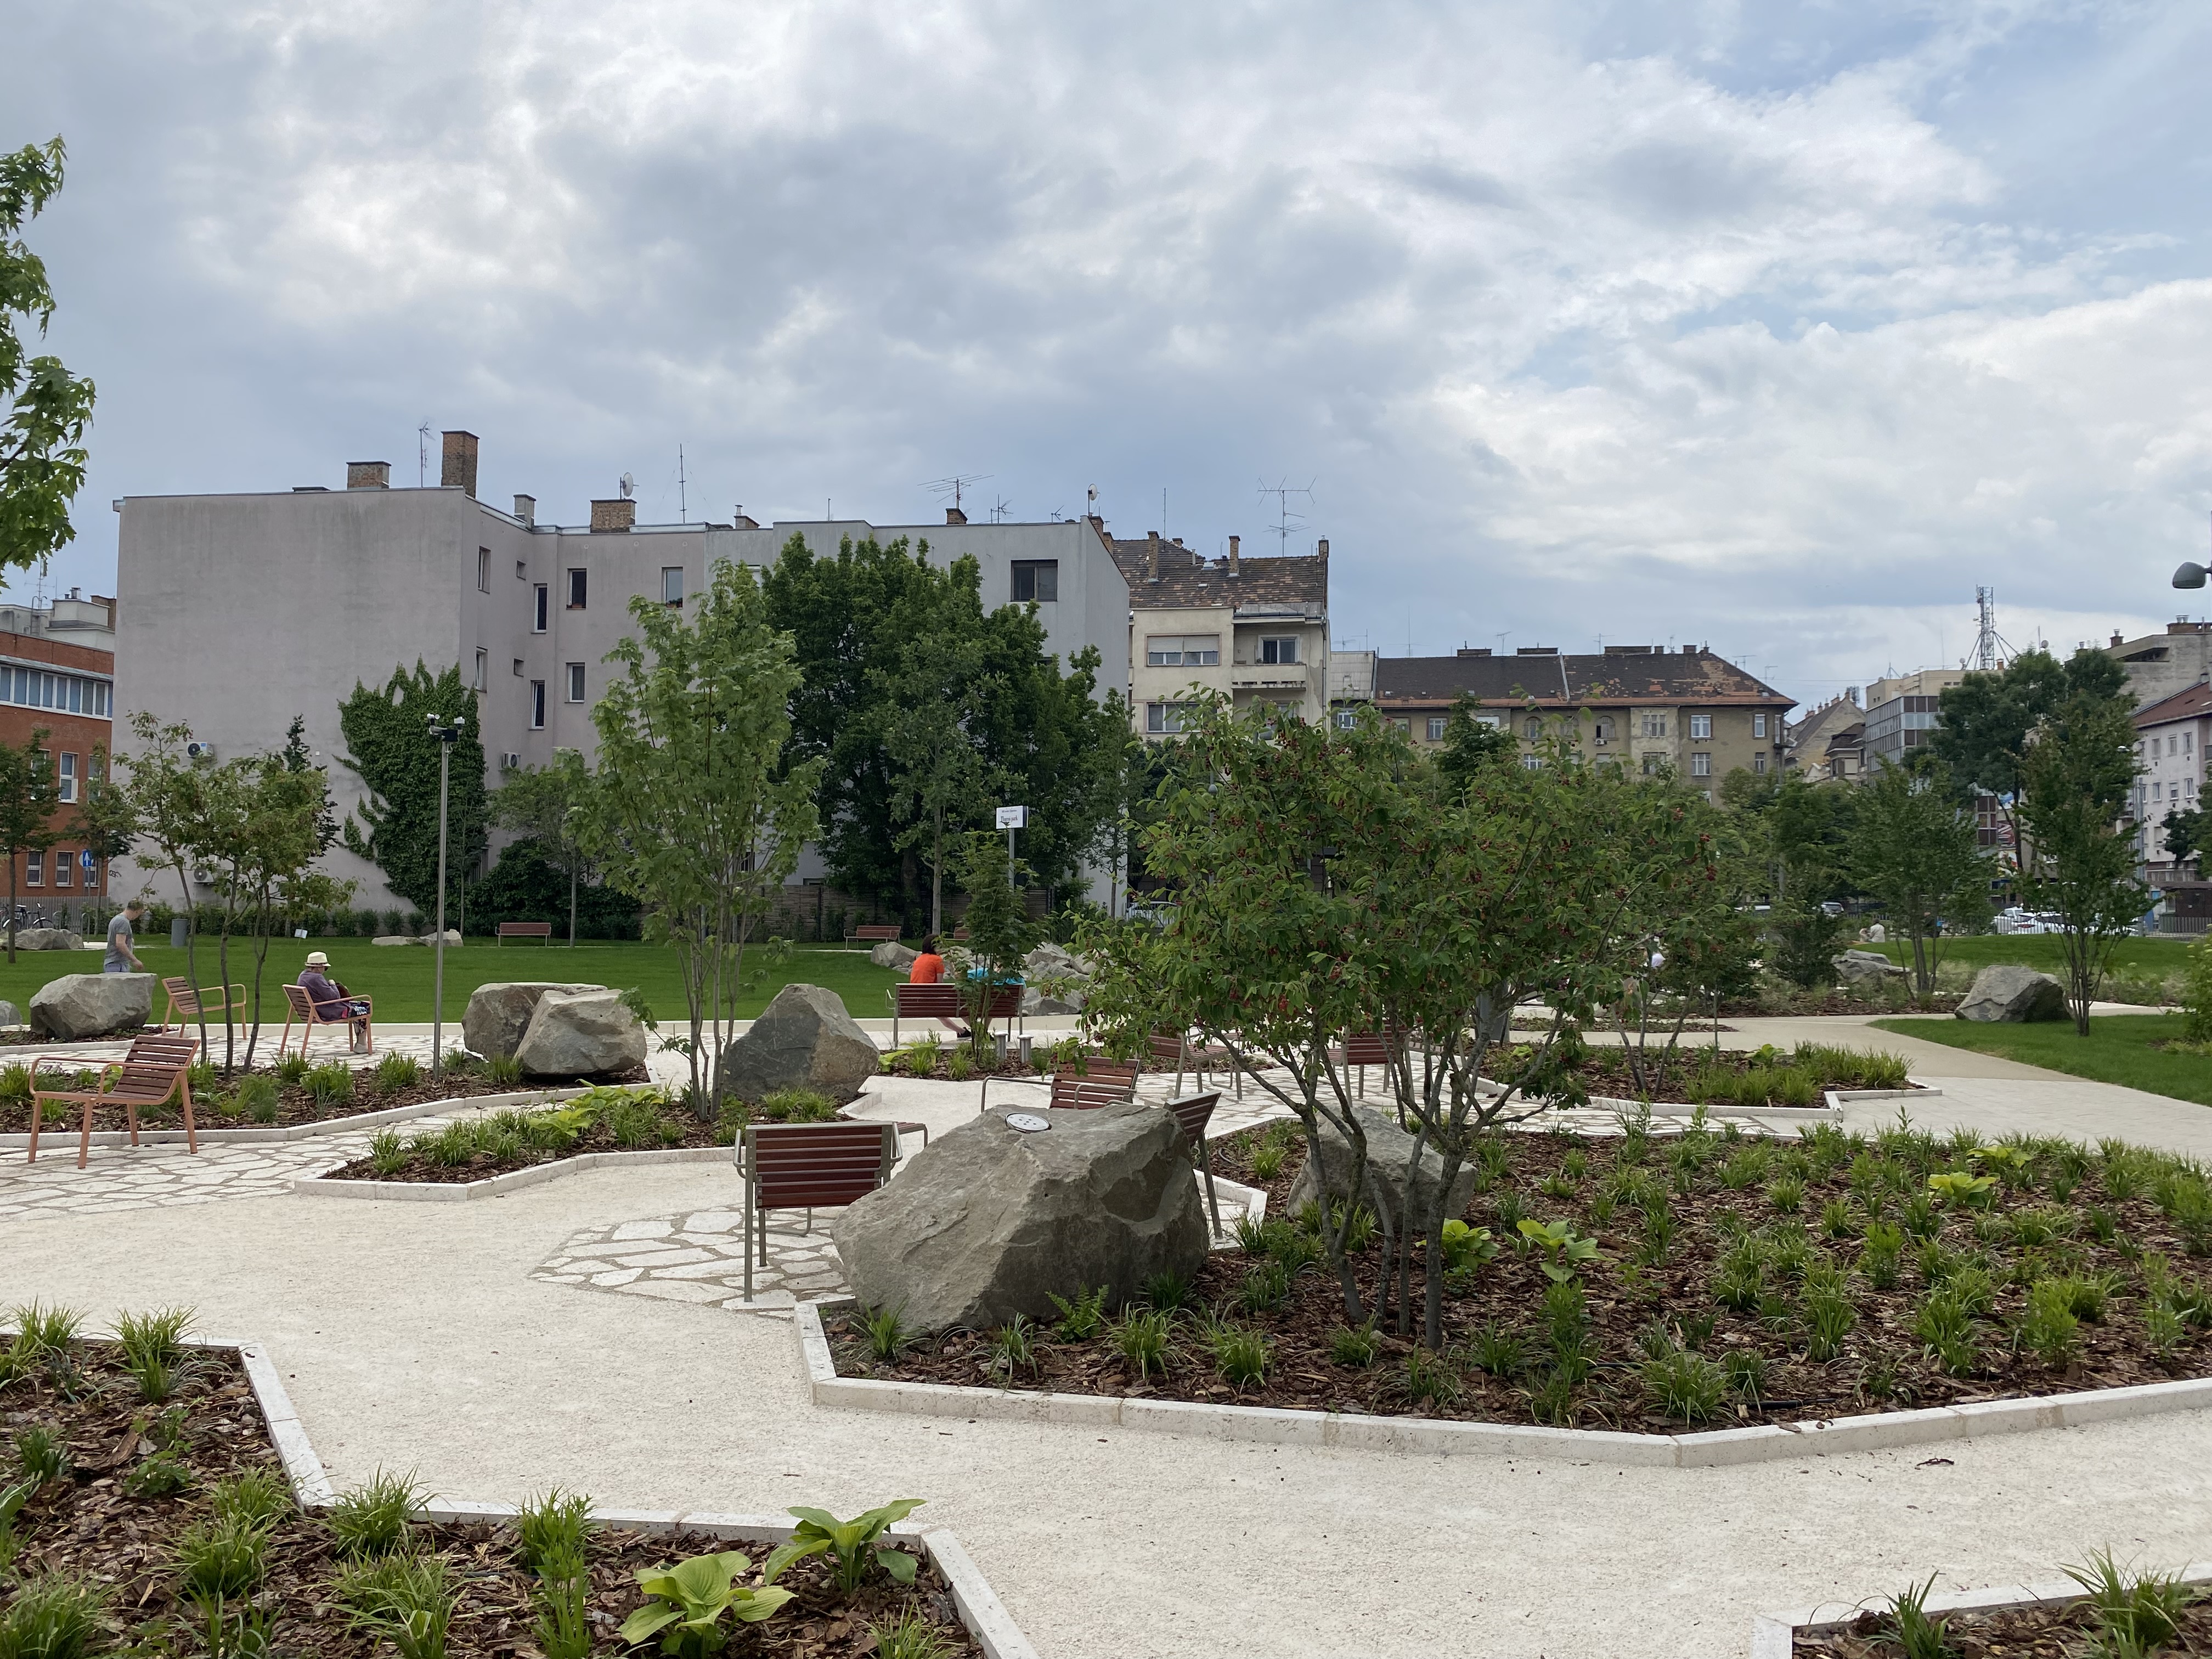 Megnyitották a XIII. kerületi Thurzó parkot, melynek 80%-át növények borítják